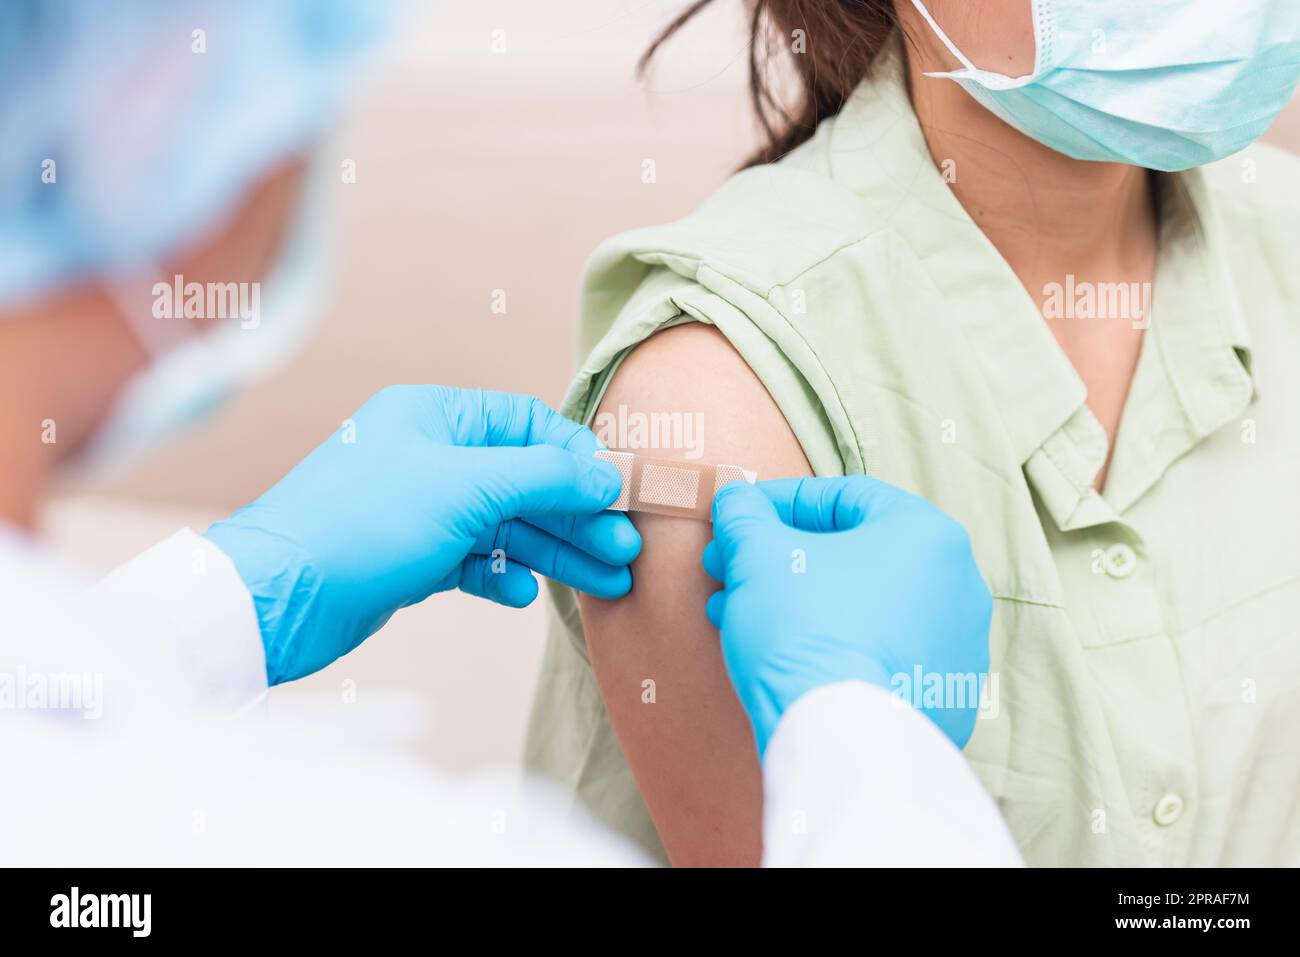 Médecin homme après injection coronavirus vaccin à la jeune femme épaule il caoutchouc gants de protection mettre un pansement adhésif bandage Banque D'Images